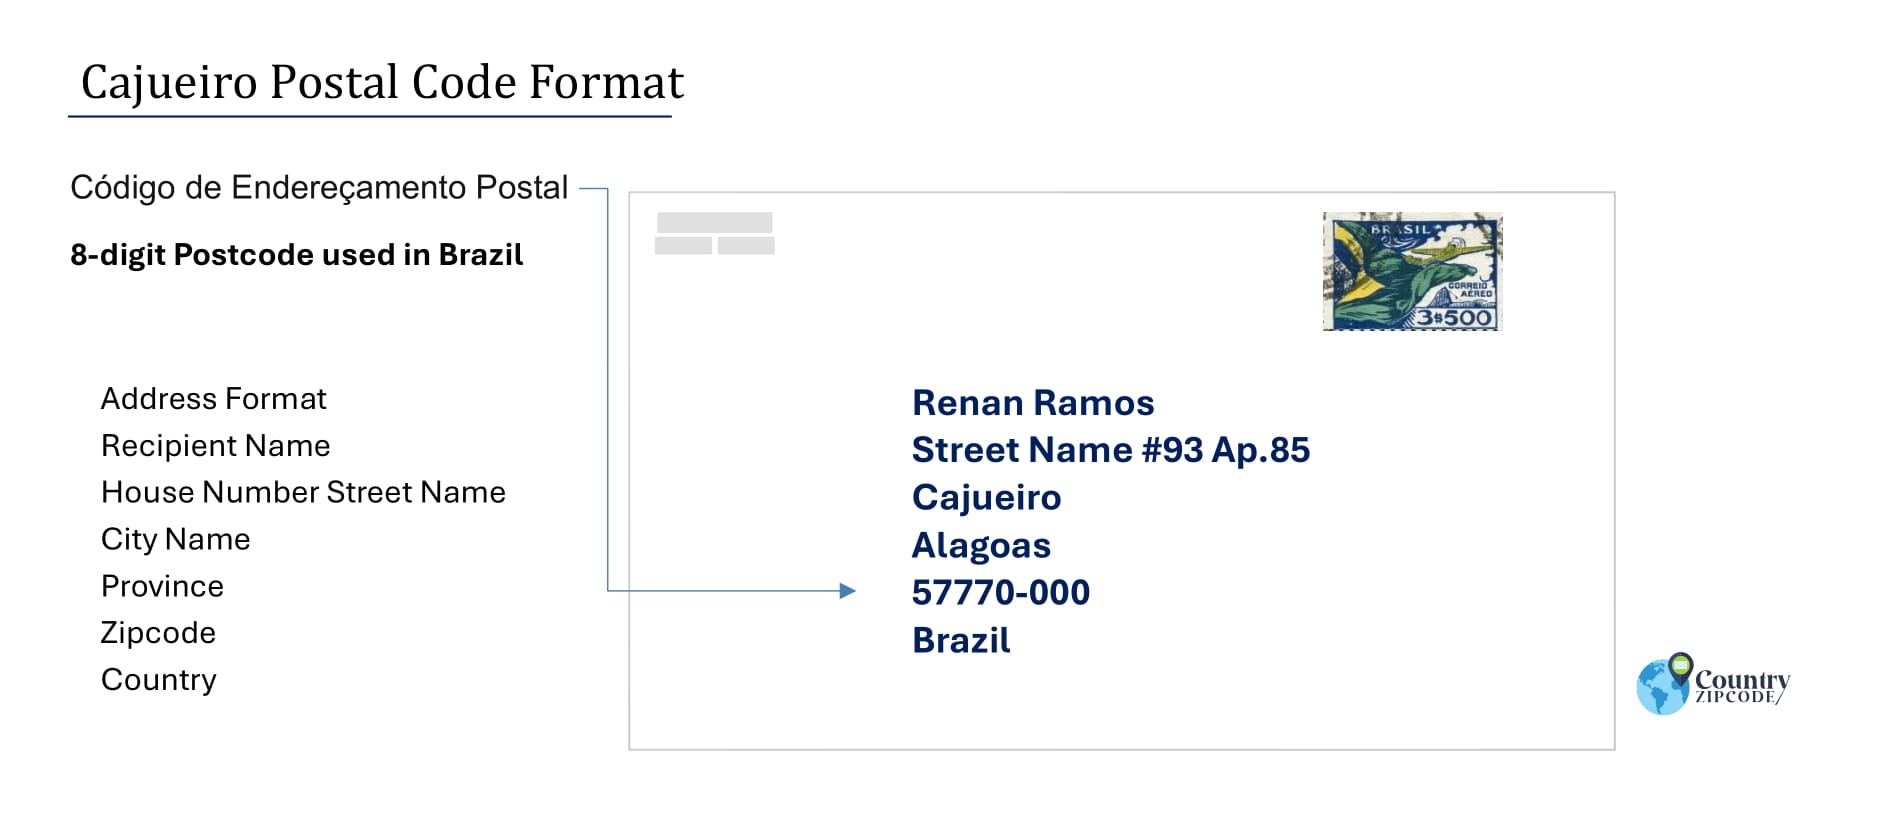 Example of Codigo de Enderecamento Postal and Address format of Cajueiro Brazil